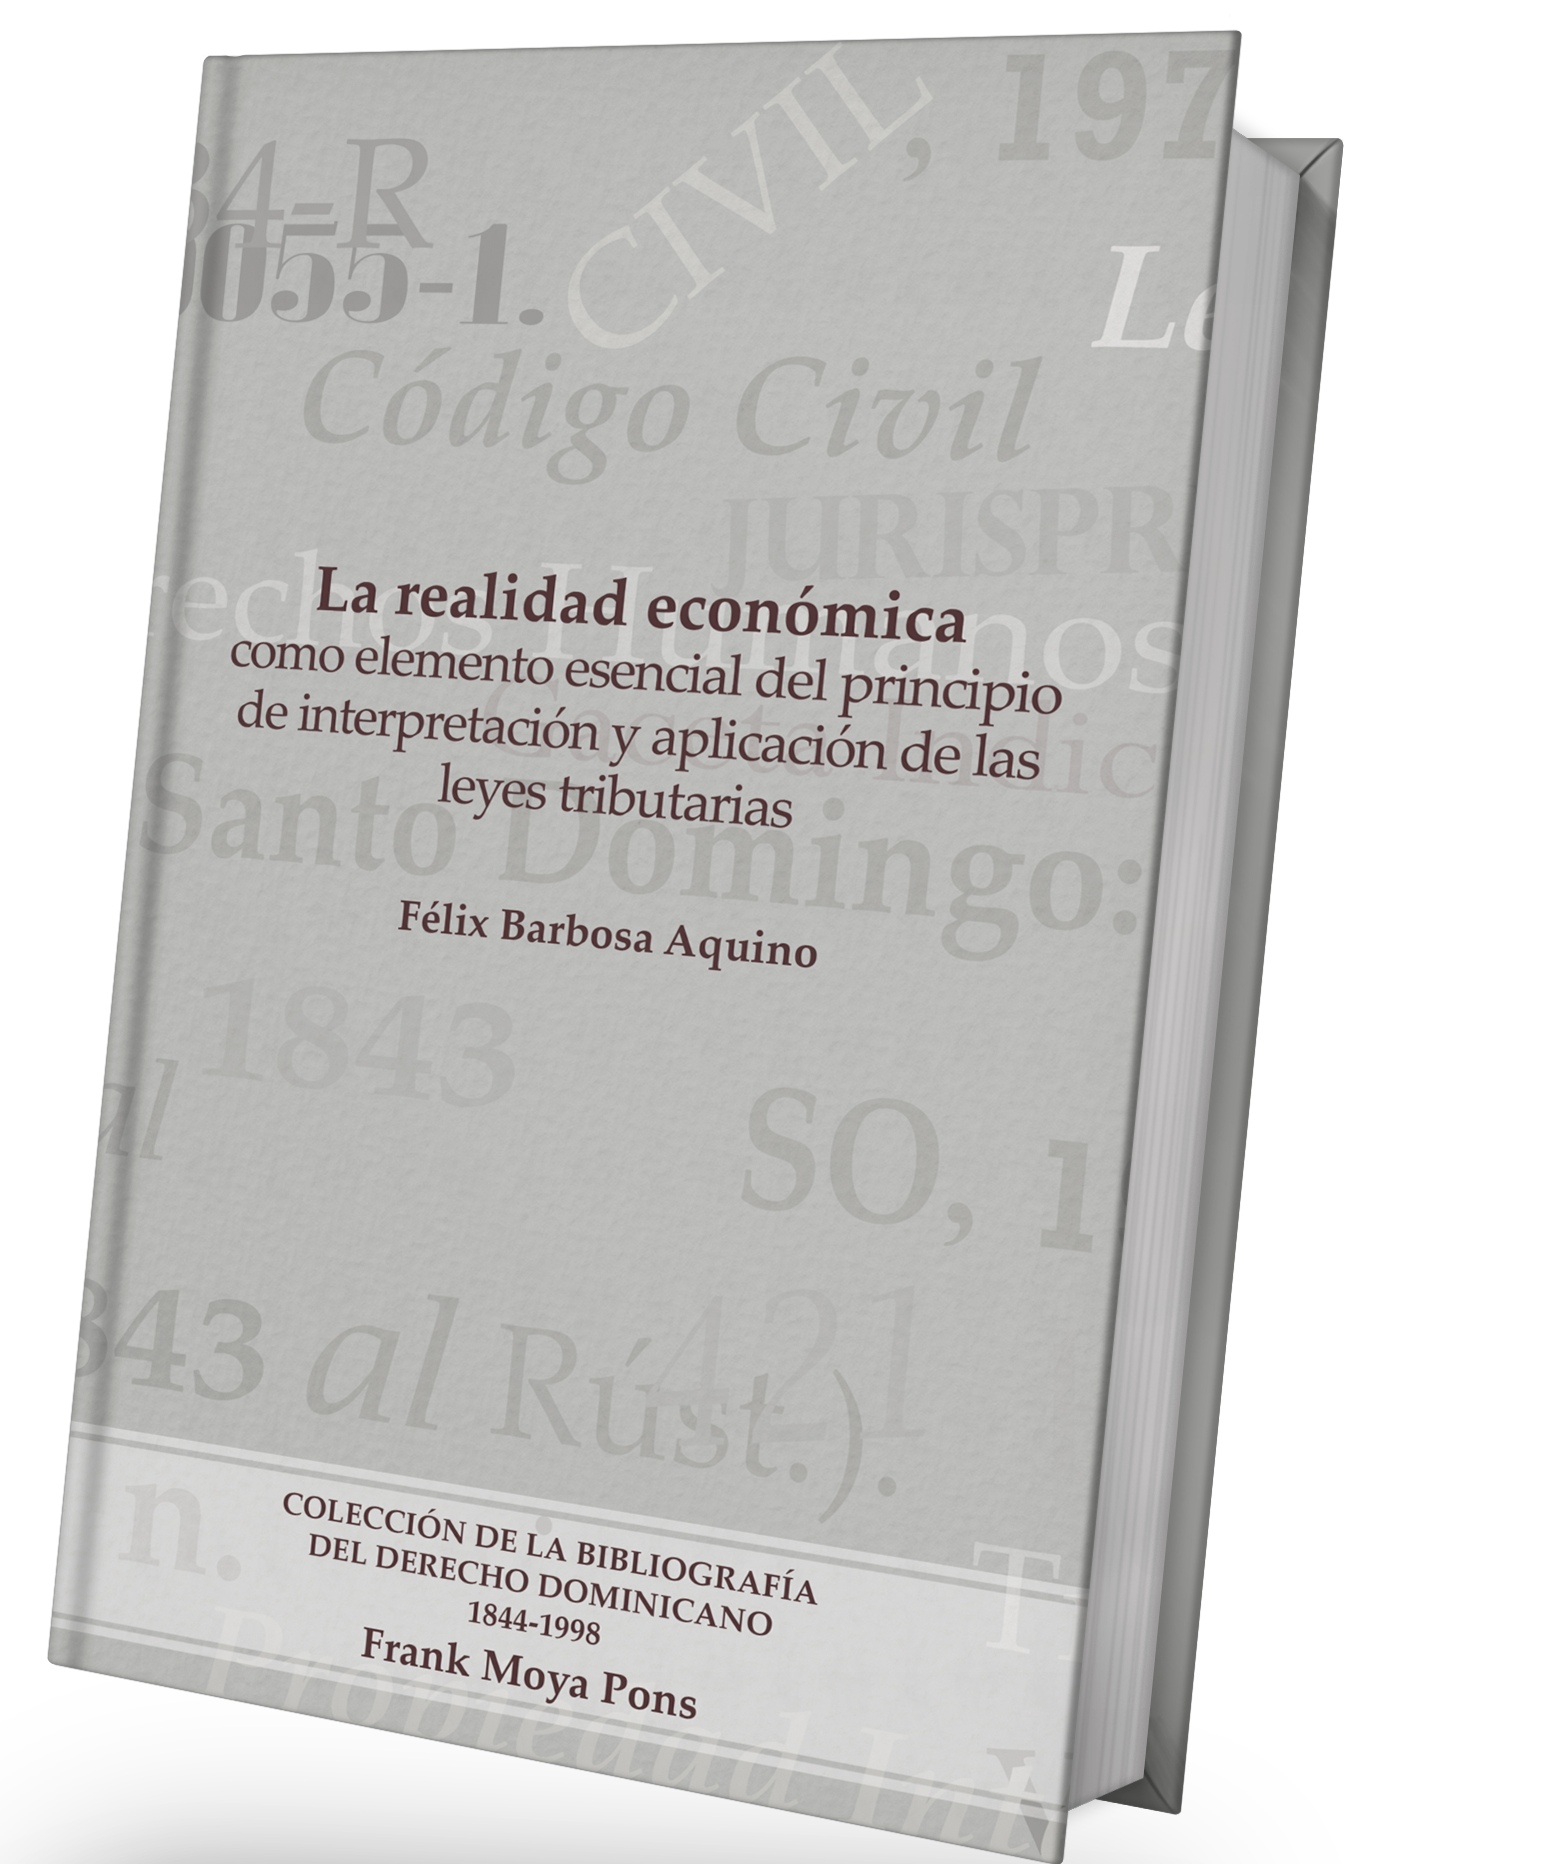 La realidad económica como elemento esencial del principio de interpretación y aplicación de las leyes tributarias / Félix Barbosa Aquino